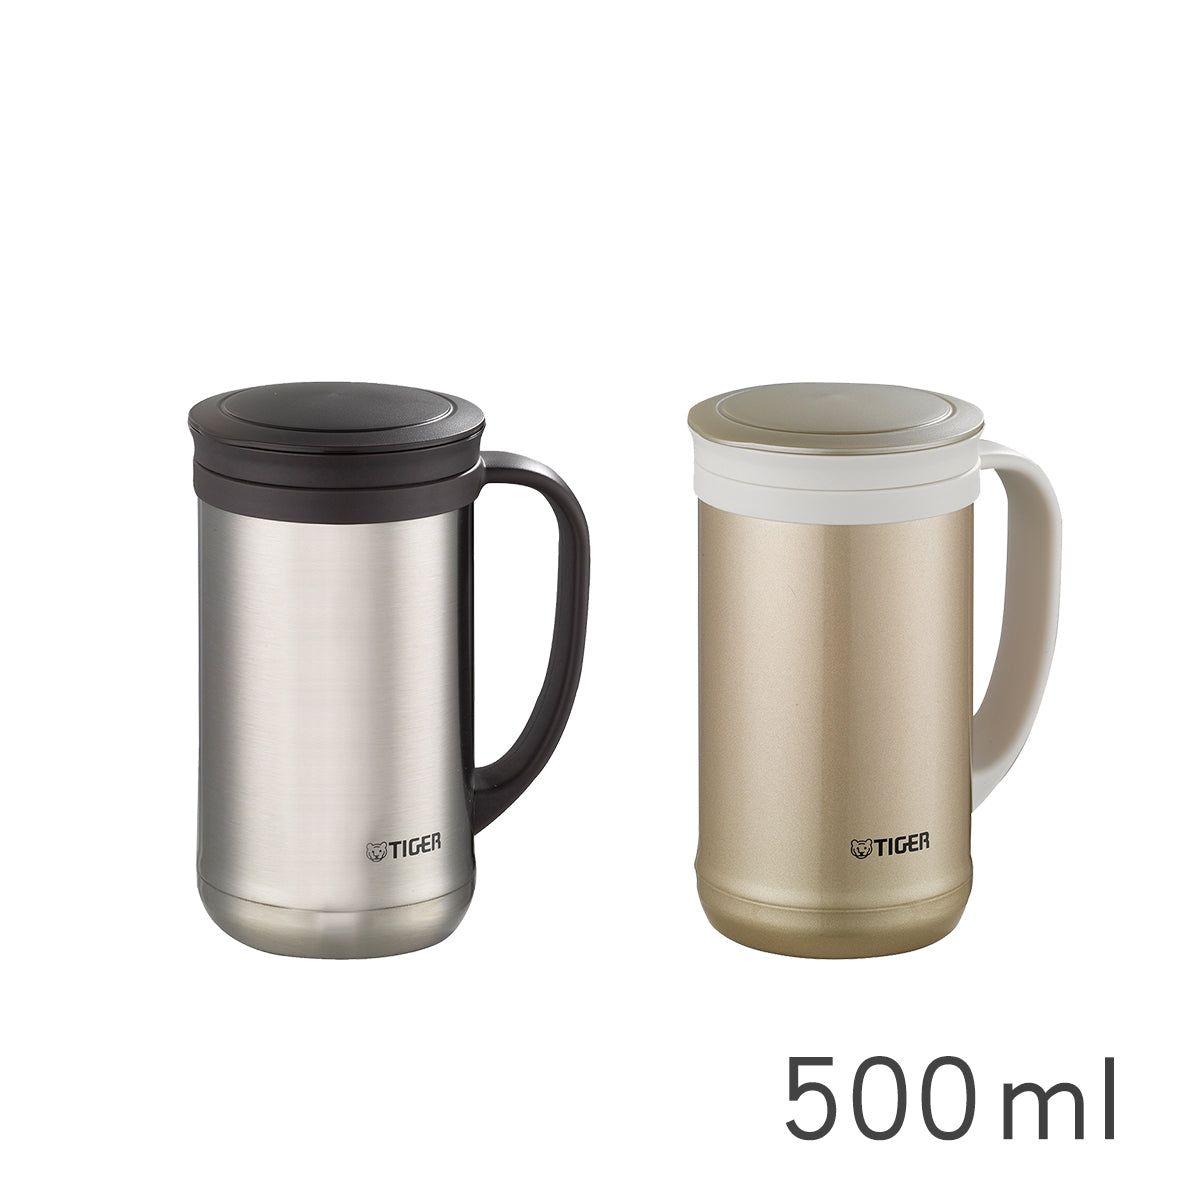 茶濾網型不鏽鋼保溫保冷辦公杯500ml (MCM-T050)